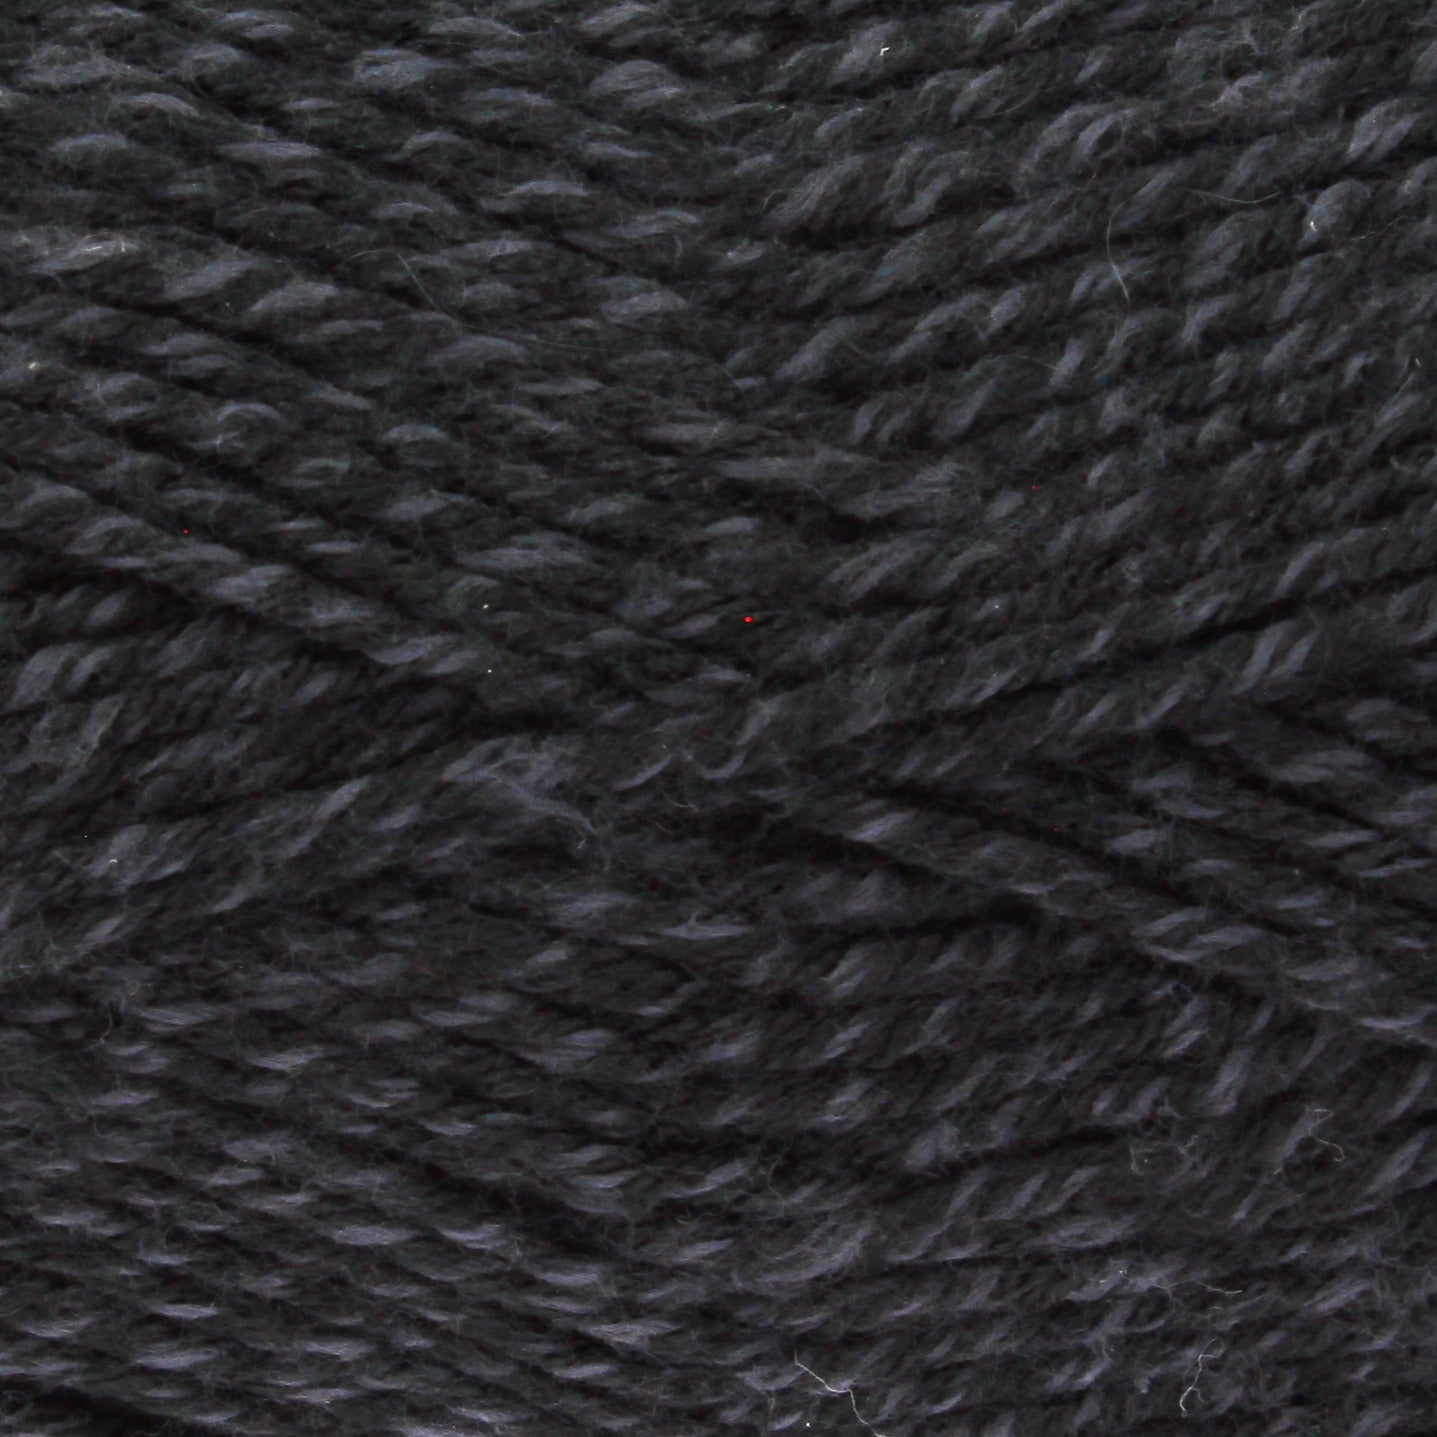 Dark grey and light grey yarn